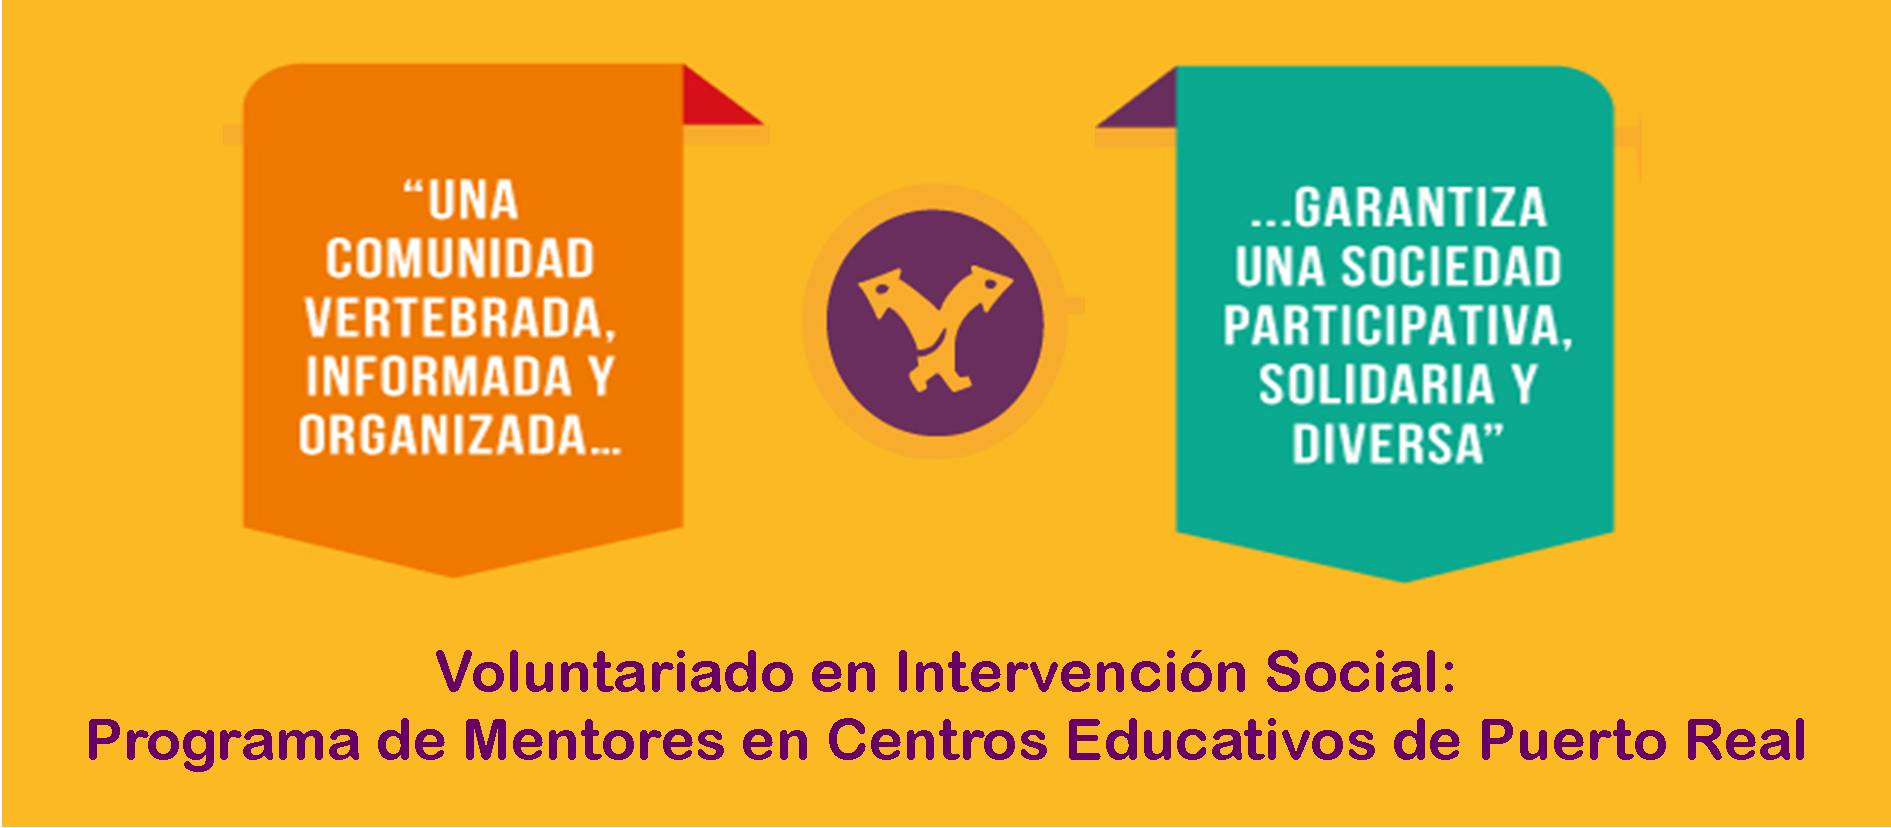 Voluntariado en Intervención Social: Programa de Mentores en Centros Educativos de Puerto Real. Del 6 de febrero al 30 de junio.